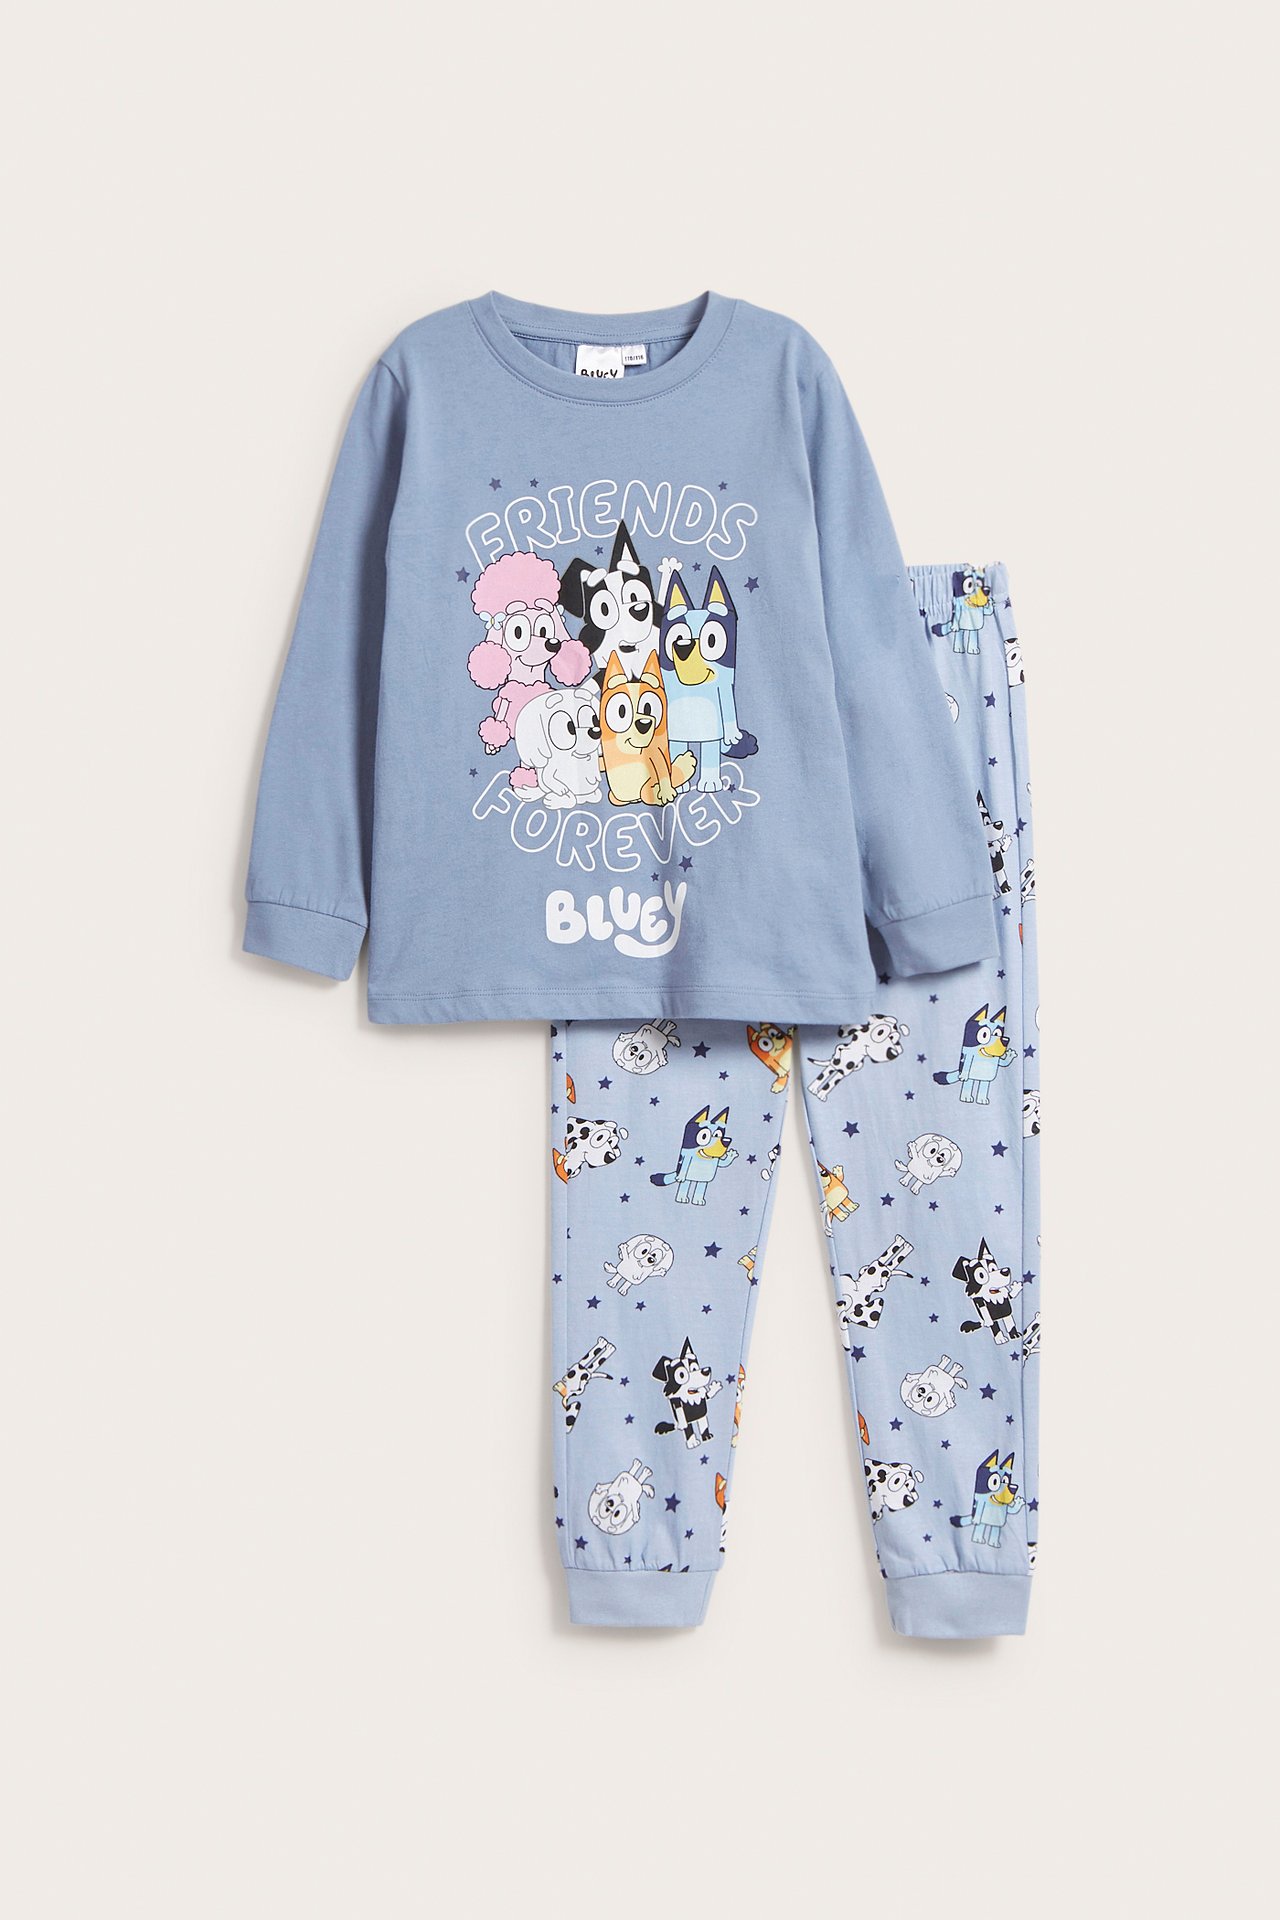 Pyjamas Bluey